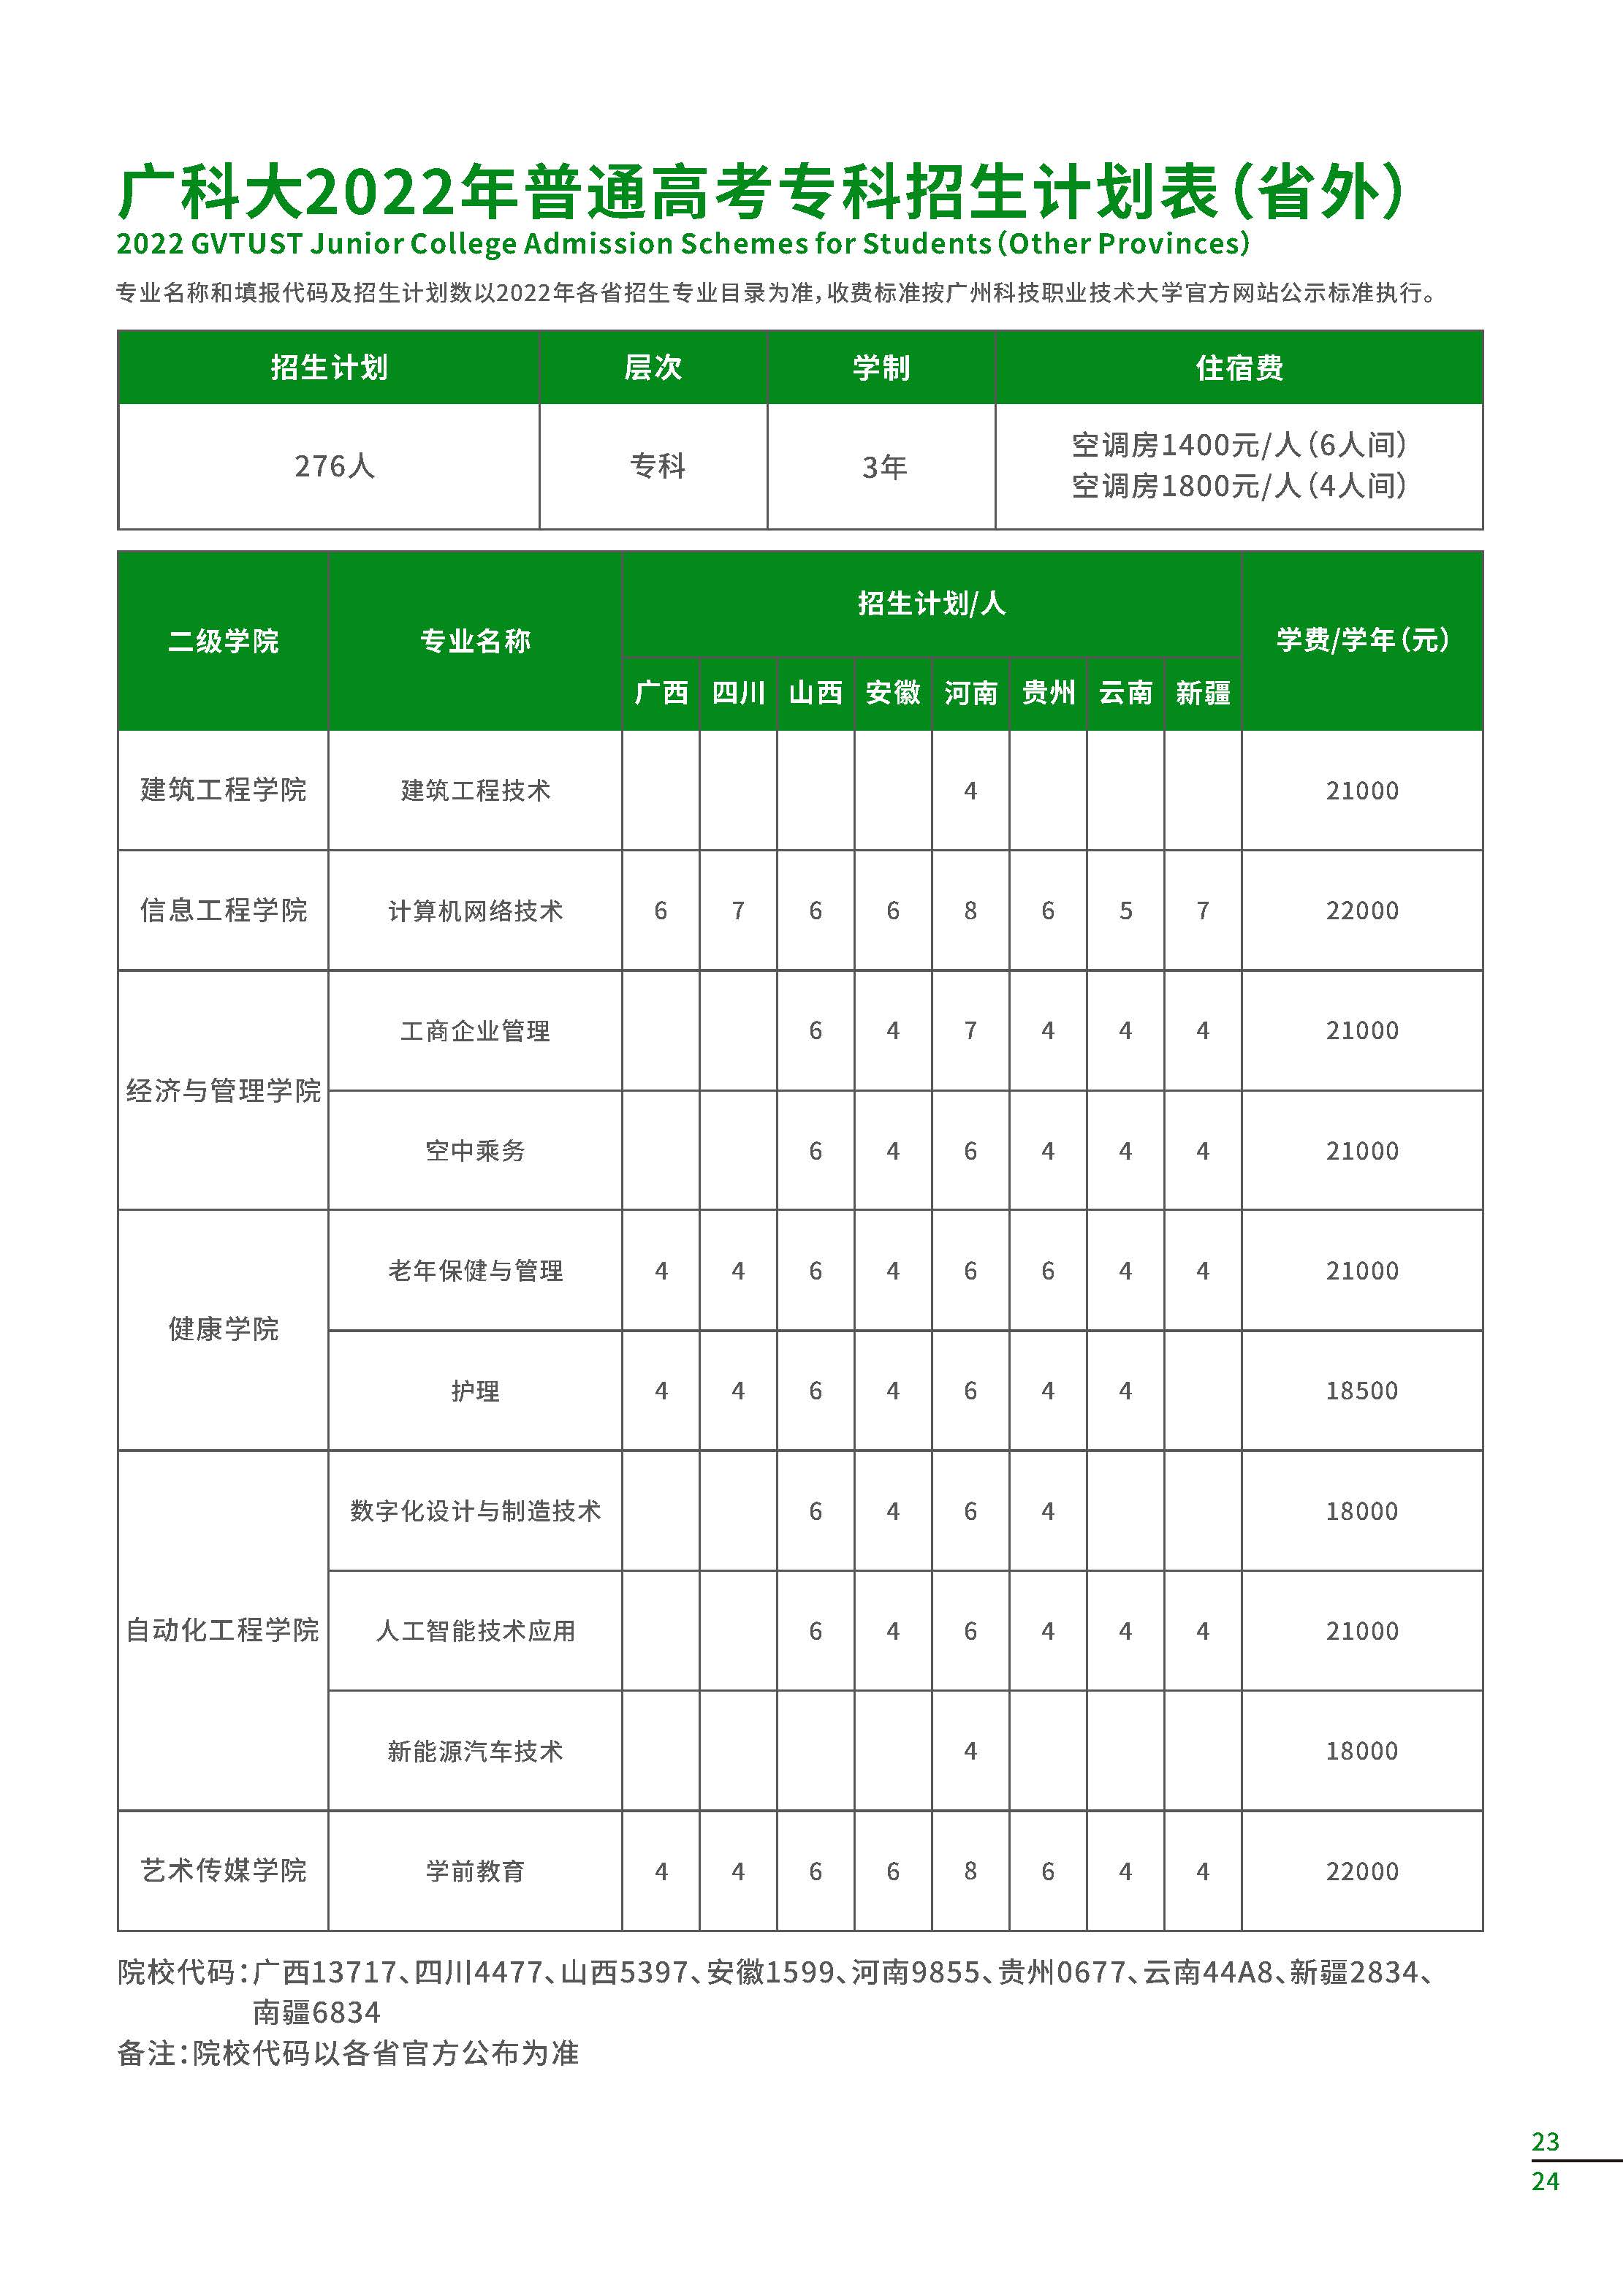 广州科技职业技术大学2022年普通高考专科招生计划表